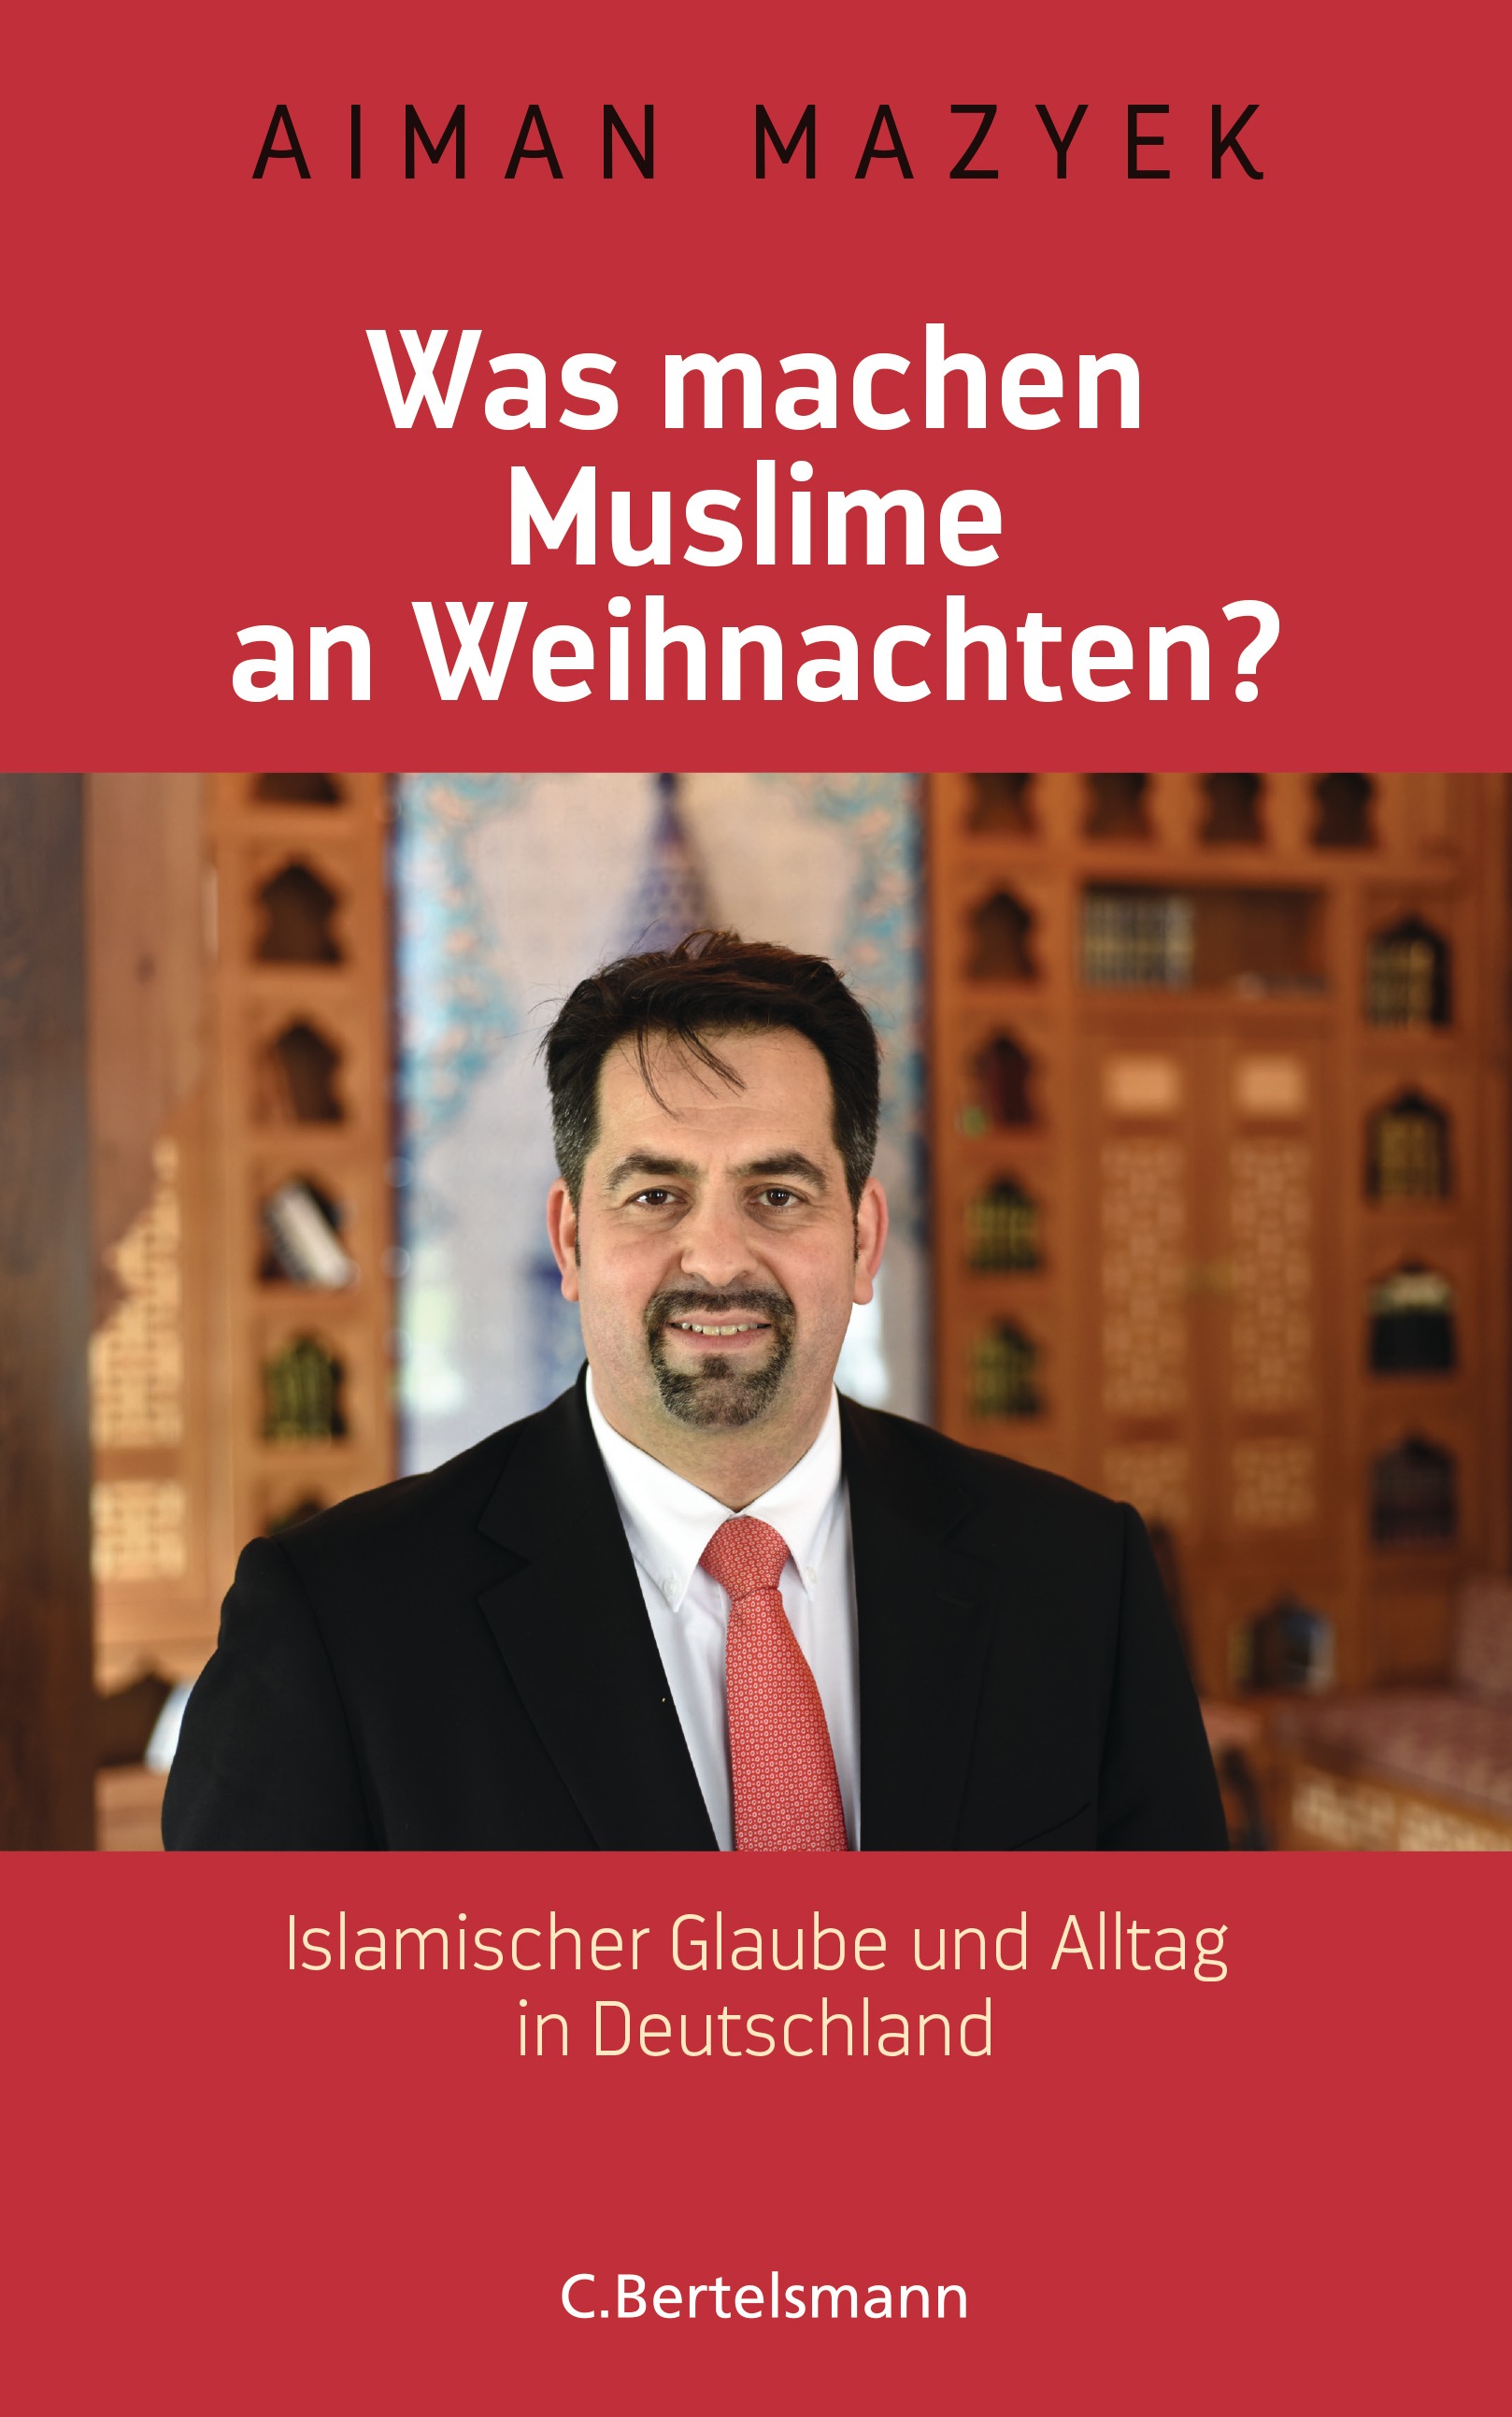 غلاف كتاب أيمن مزيك: "ماذا يفعل المسلمون في عيد الميلاد؟ الإسلام والحياة اليومية في ألمانيا"، صدر عن دار نشر برتلسمان، بتاريخ 2016.